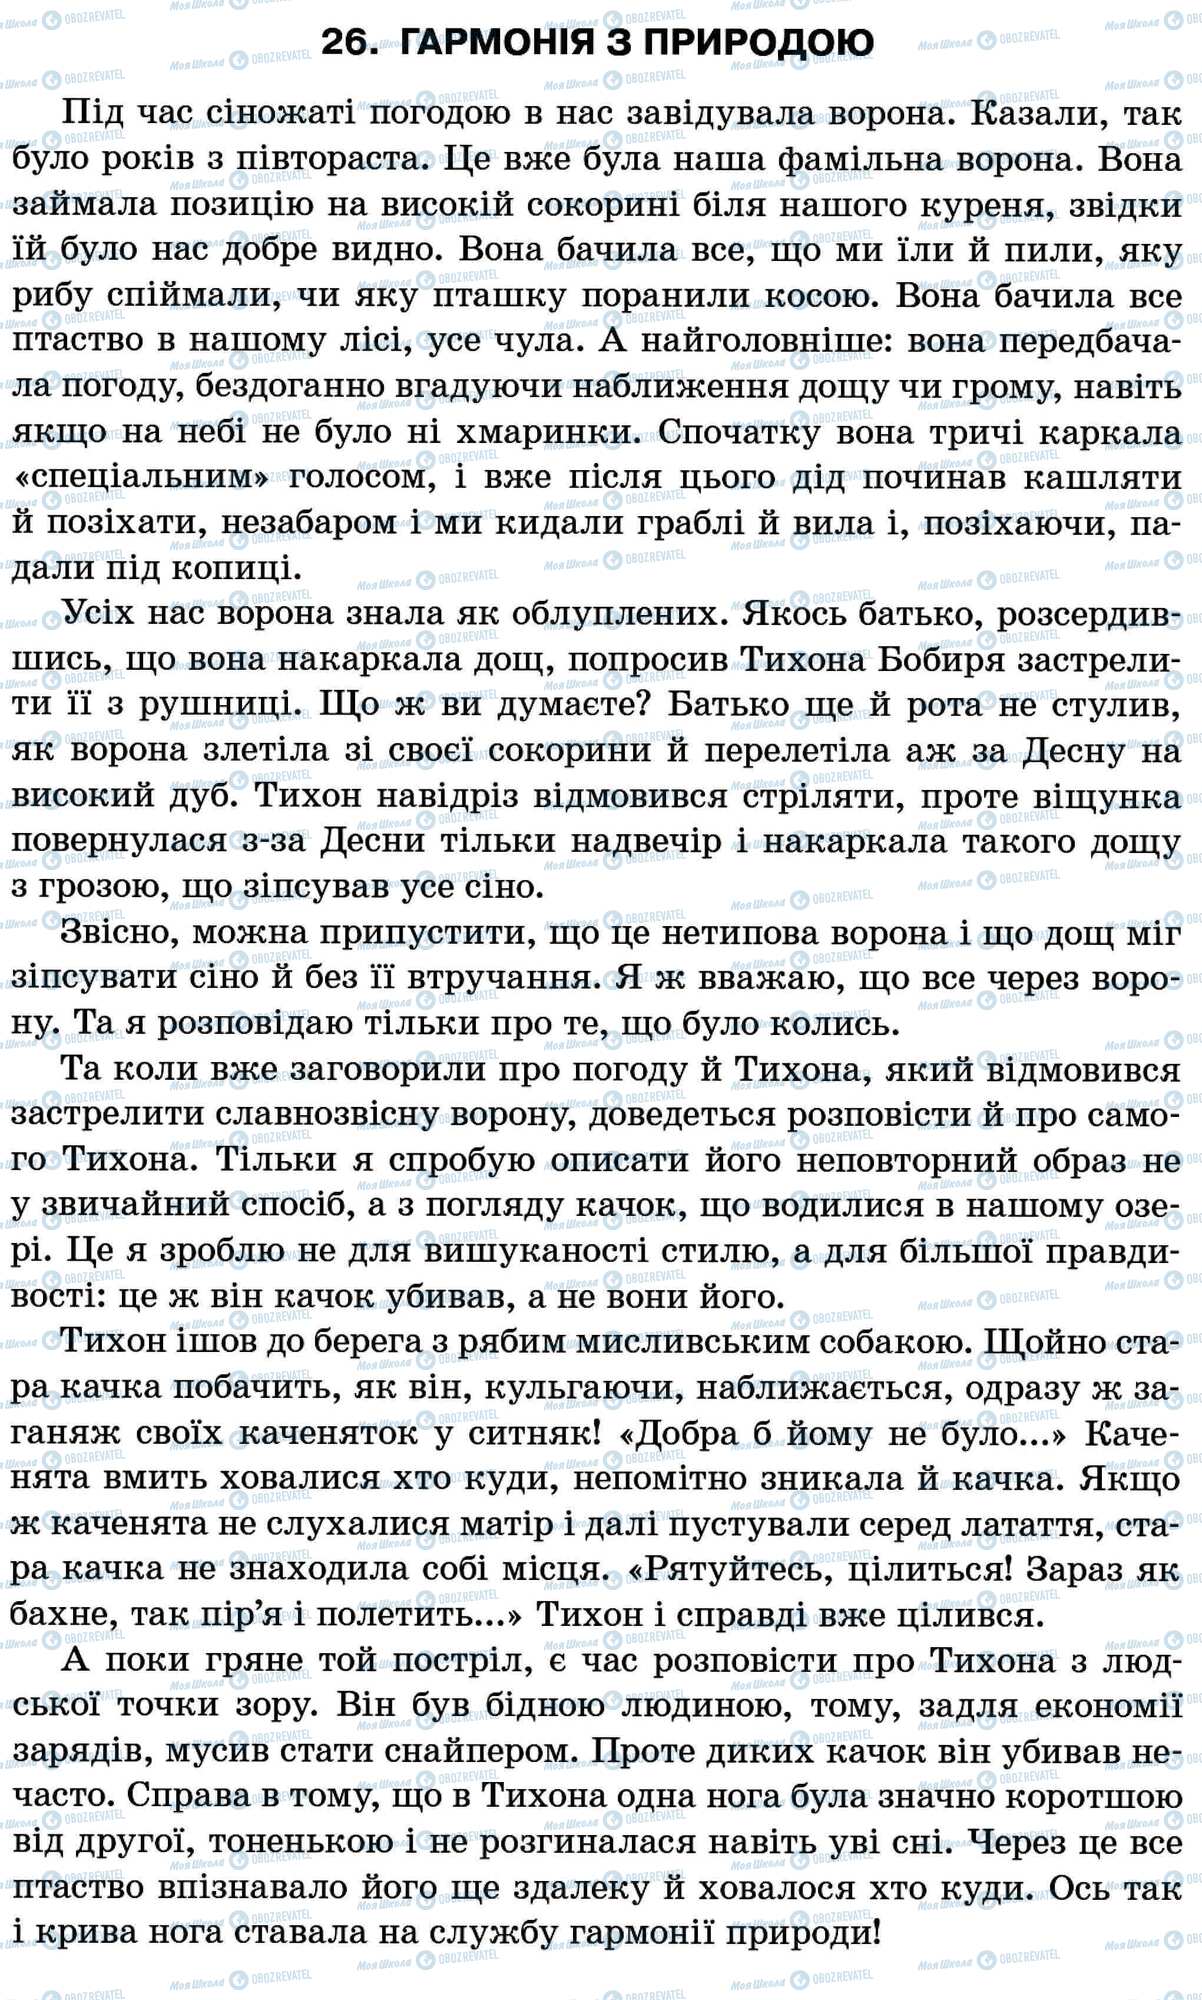 ДПА Укр мова 11 класс страница 26. Гармонія з природою